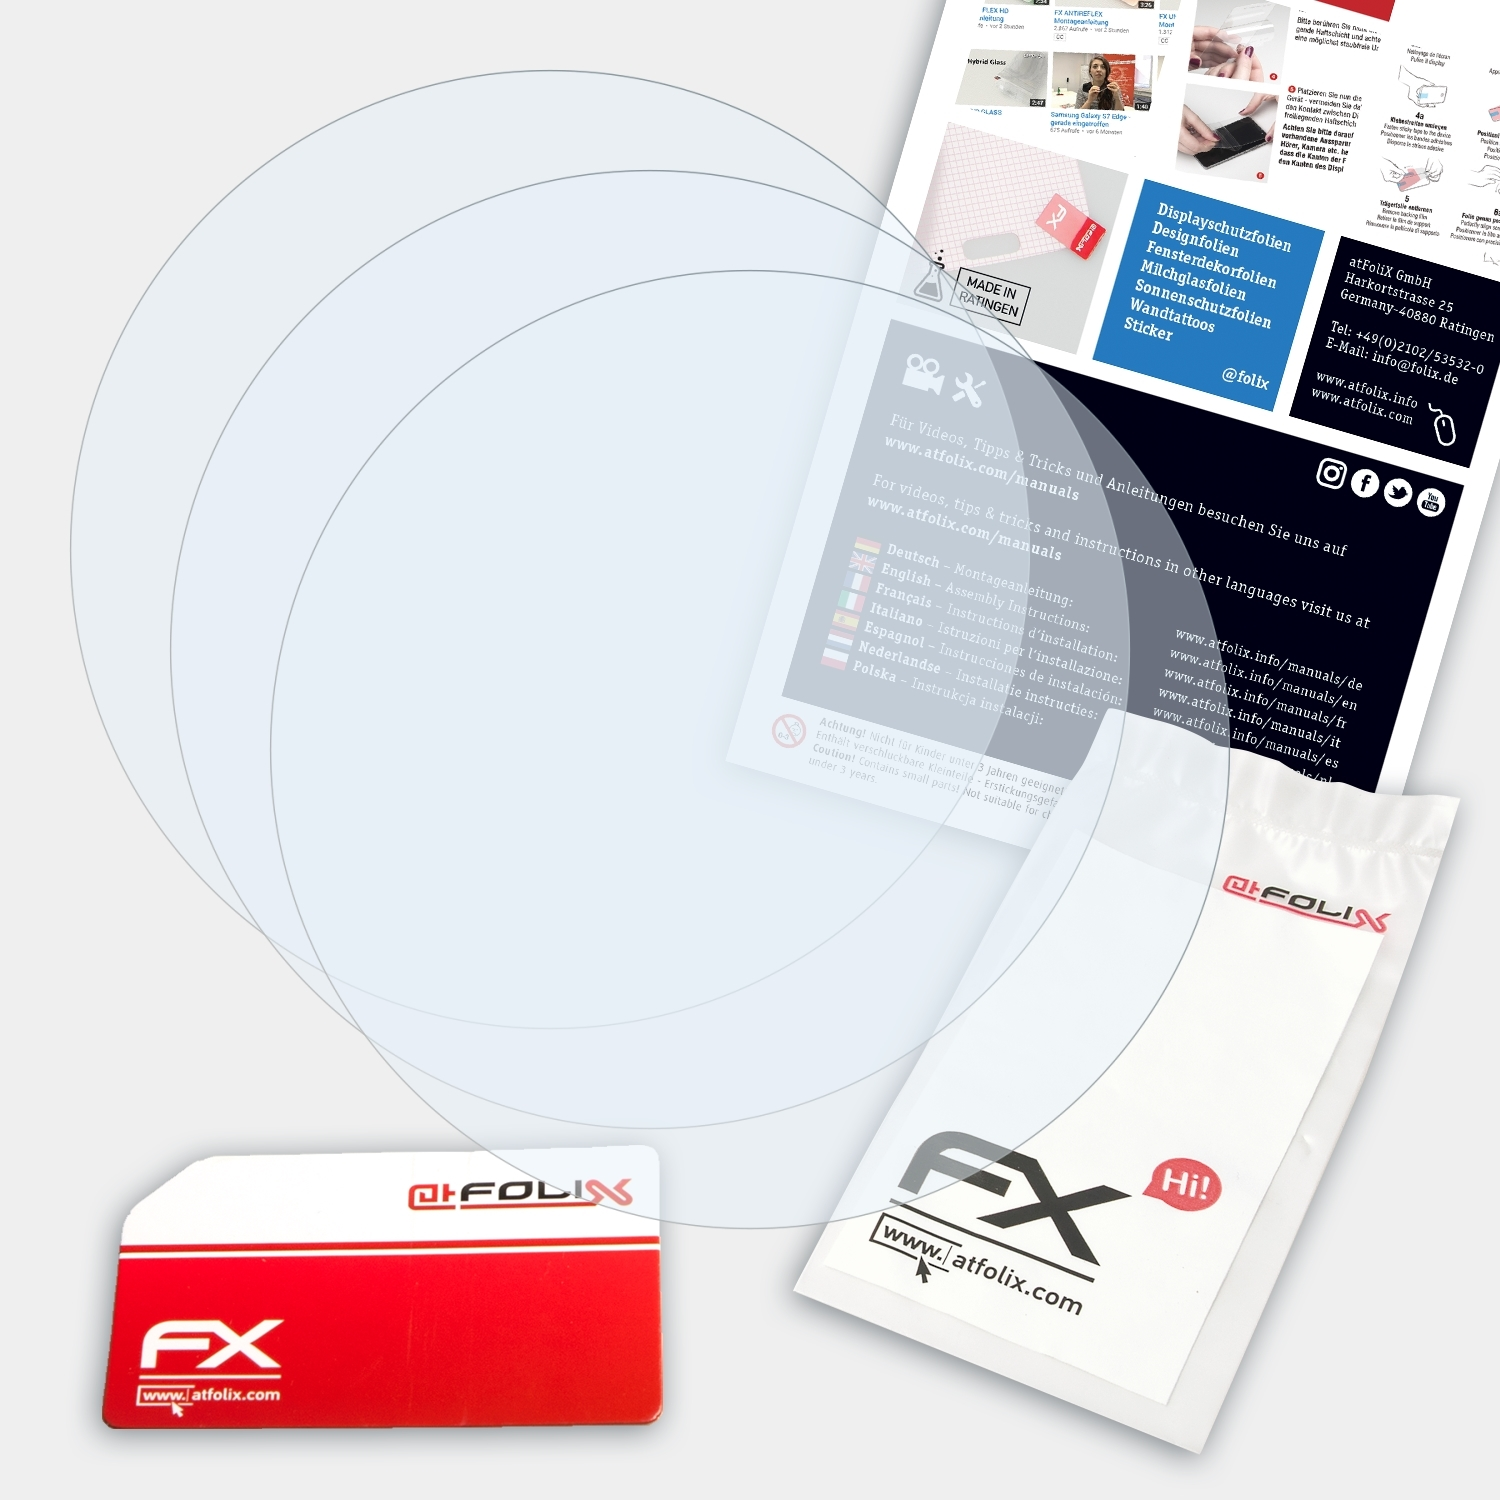 ATFOLIX 3x FX-Clear Displayschutz(für Sport) Ambit3 Suunto